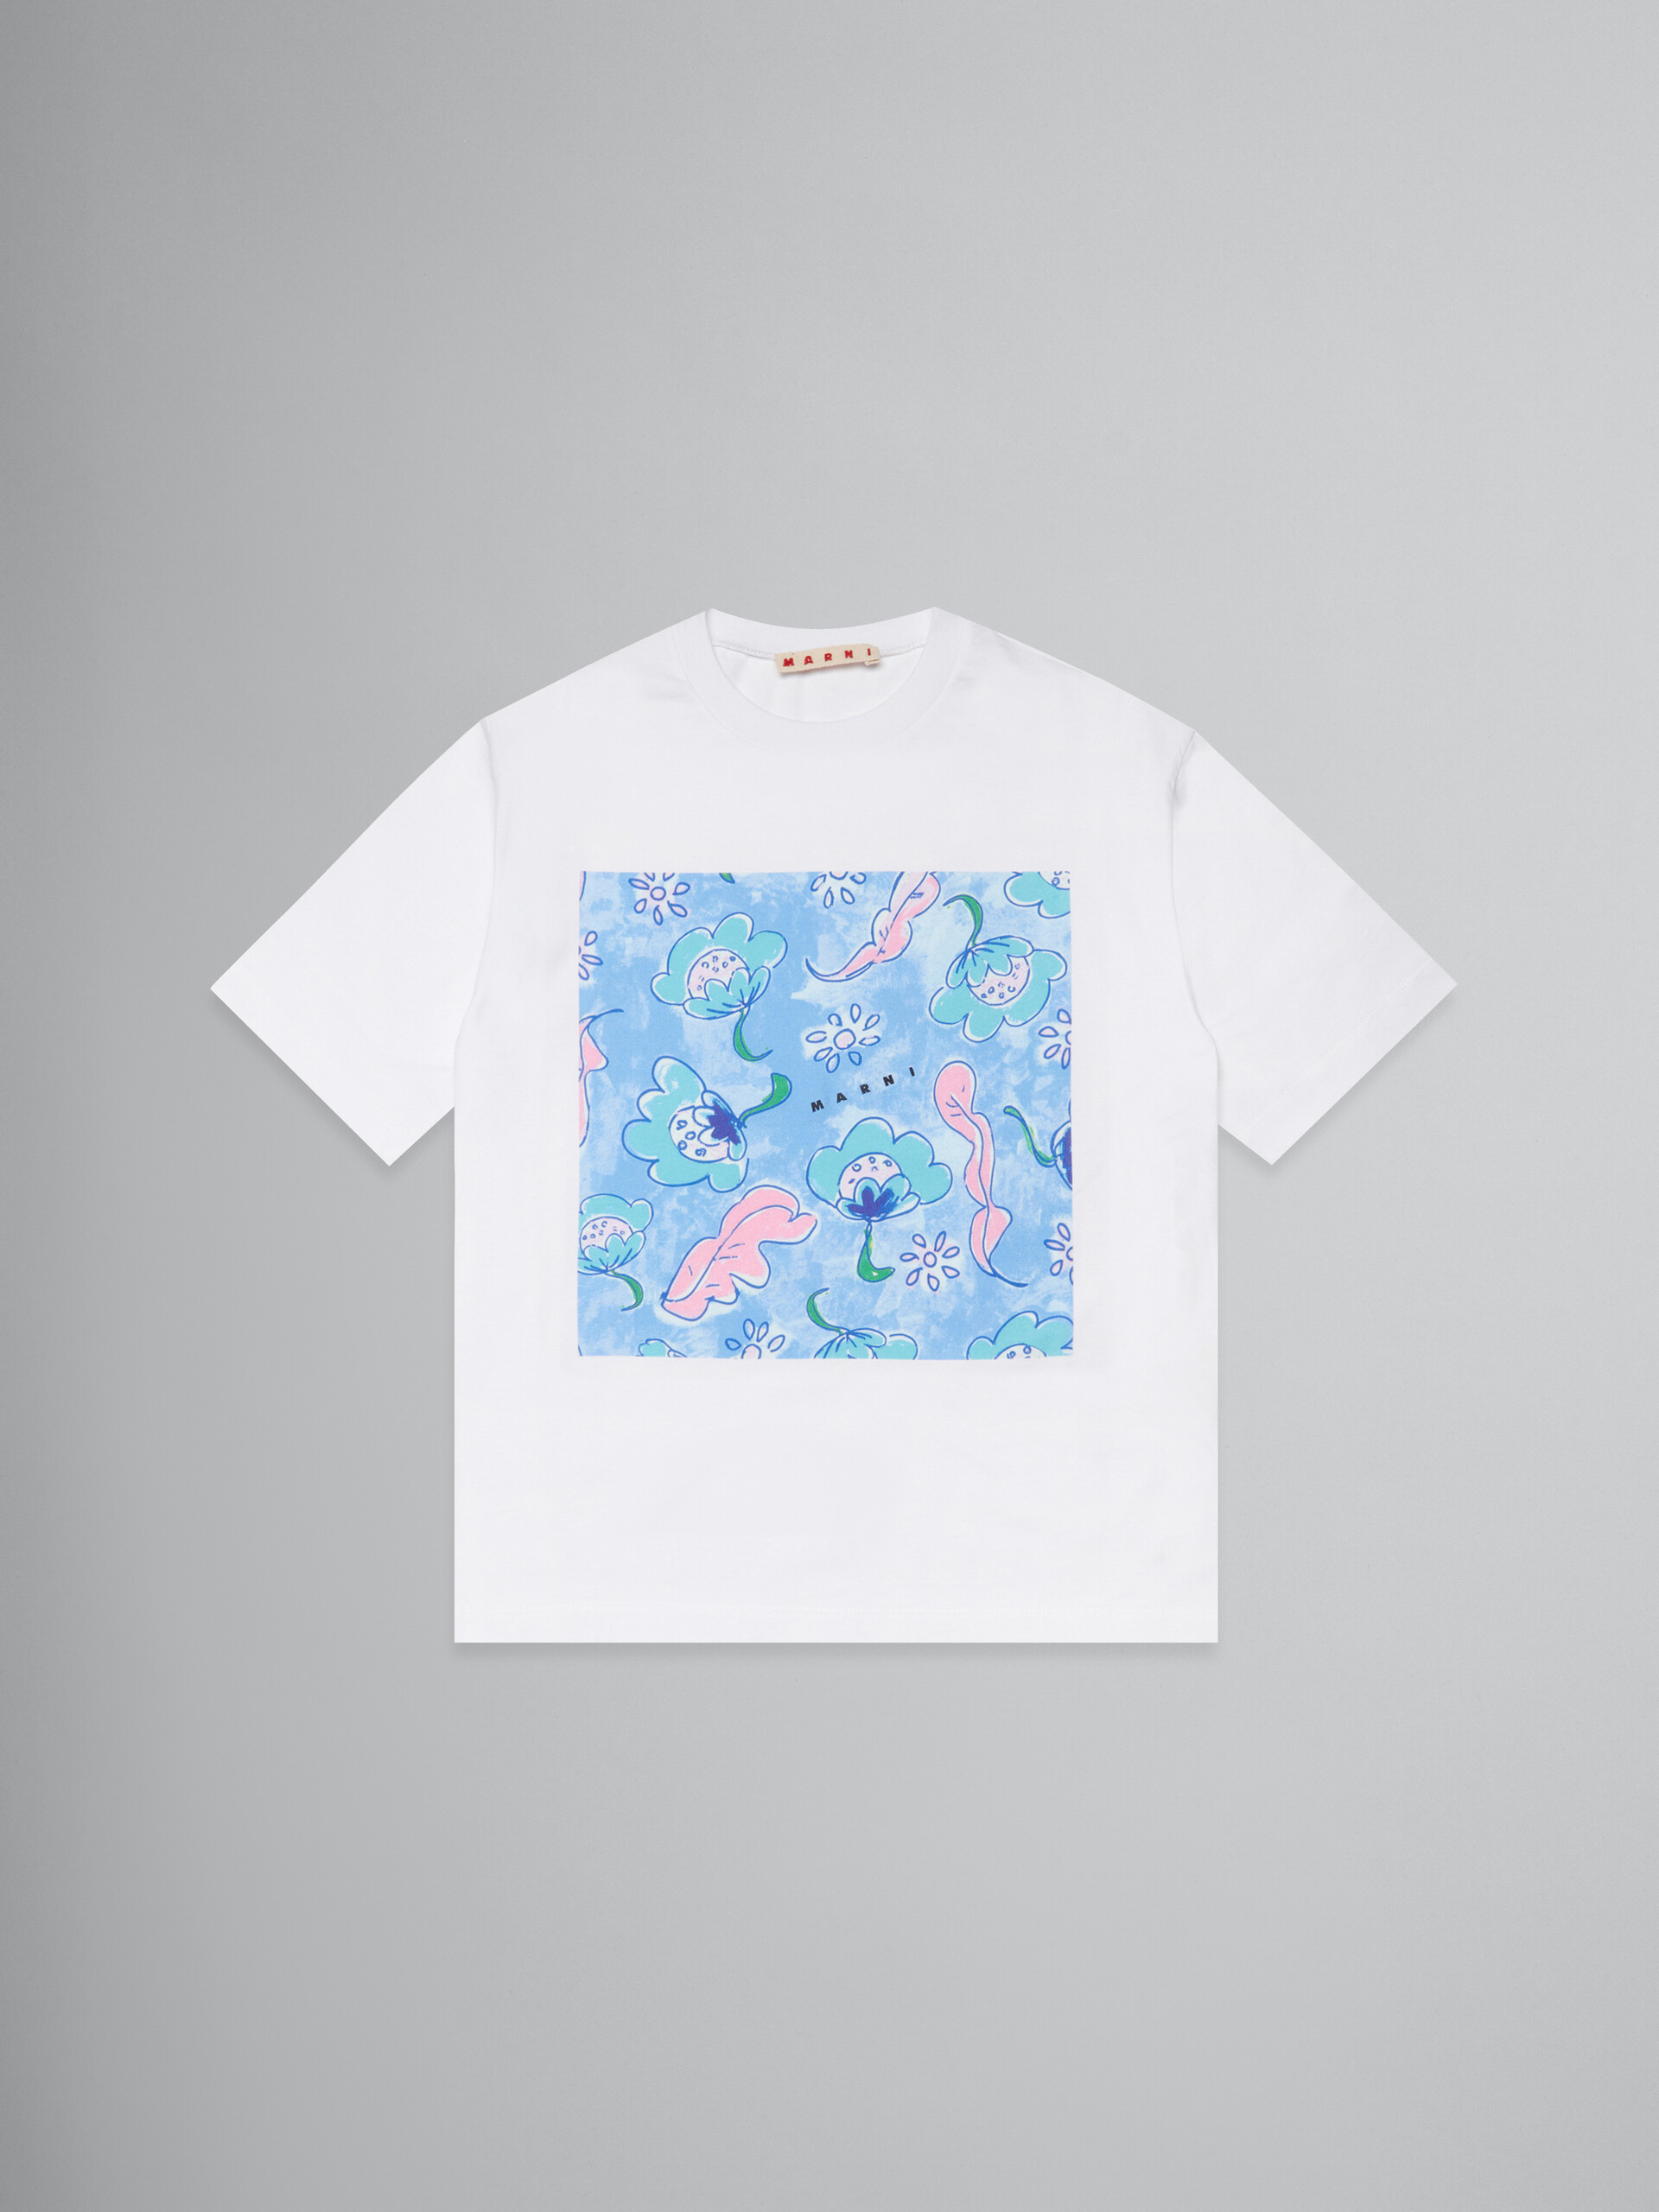 Marina 프린트 화이트 티셔츠 - 티셔츠 - Image 1